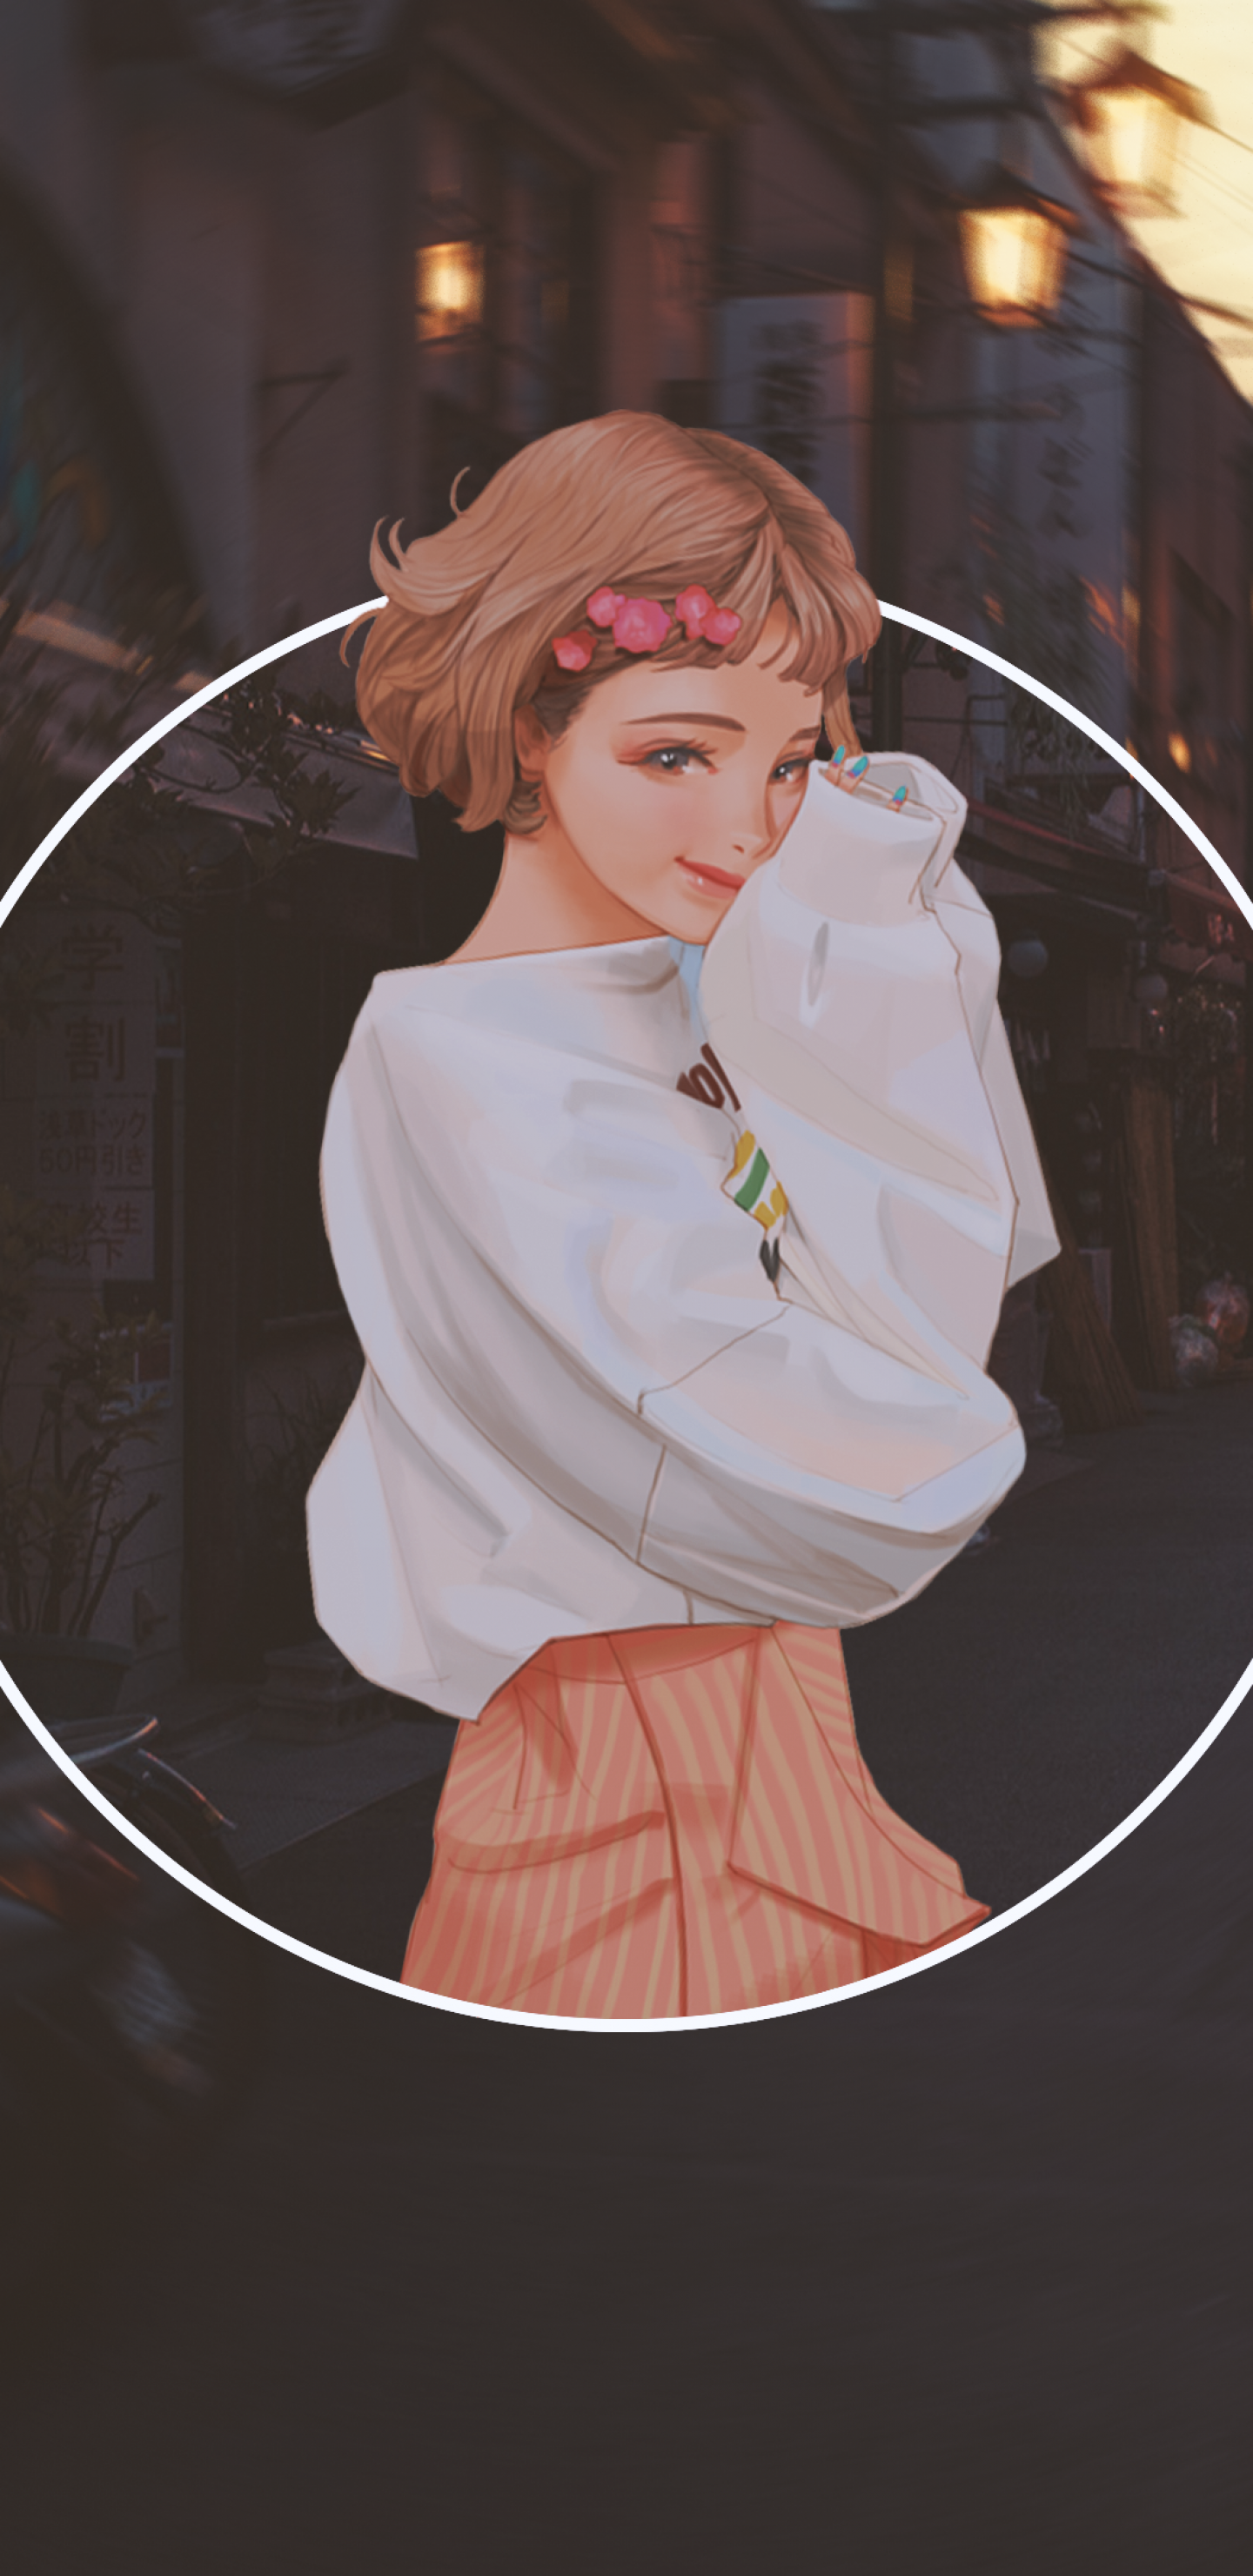 Download 1440x2960 Polyscape, Anime Girl, Semi Realistic, Cute